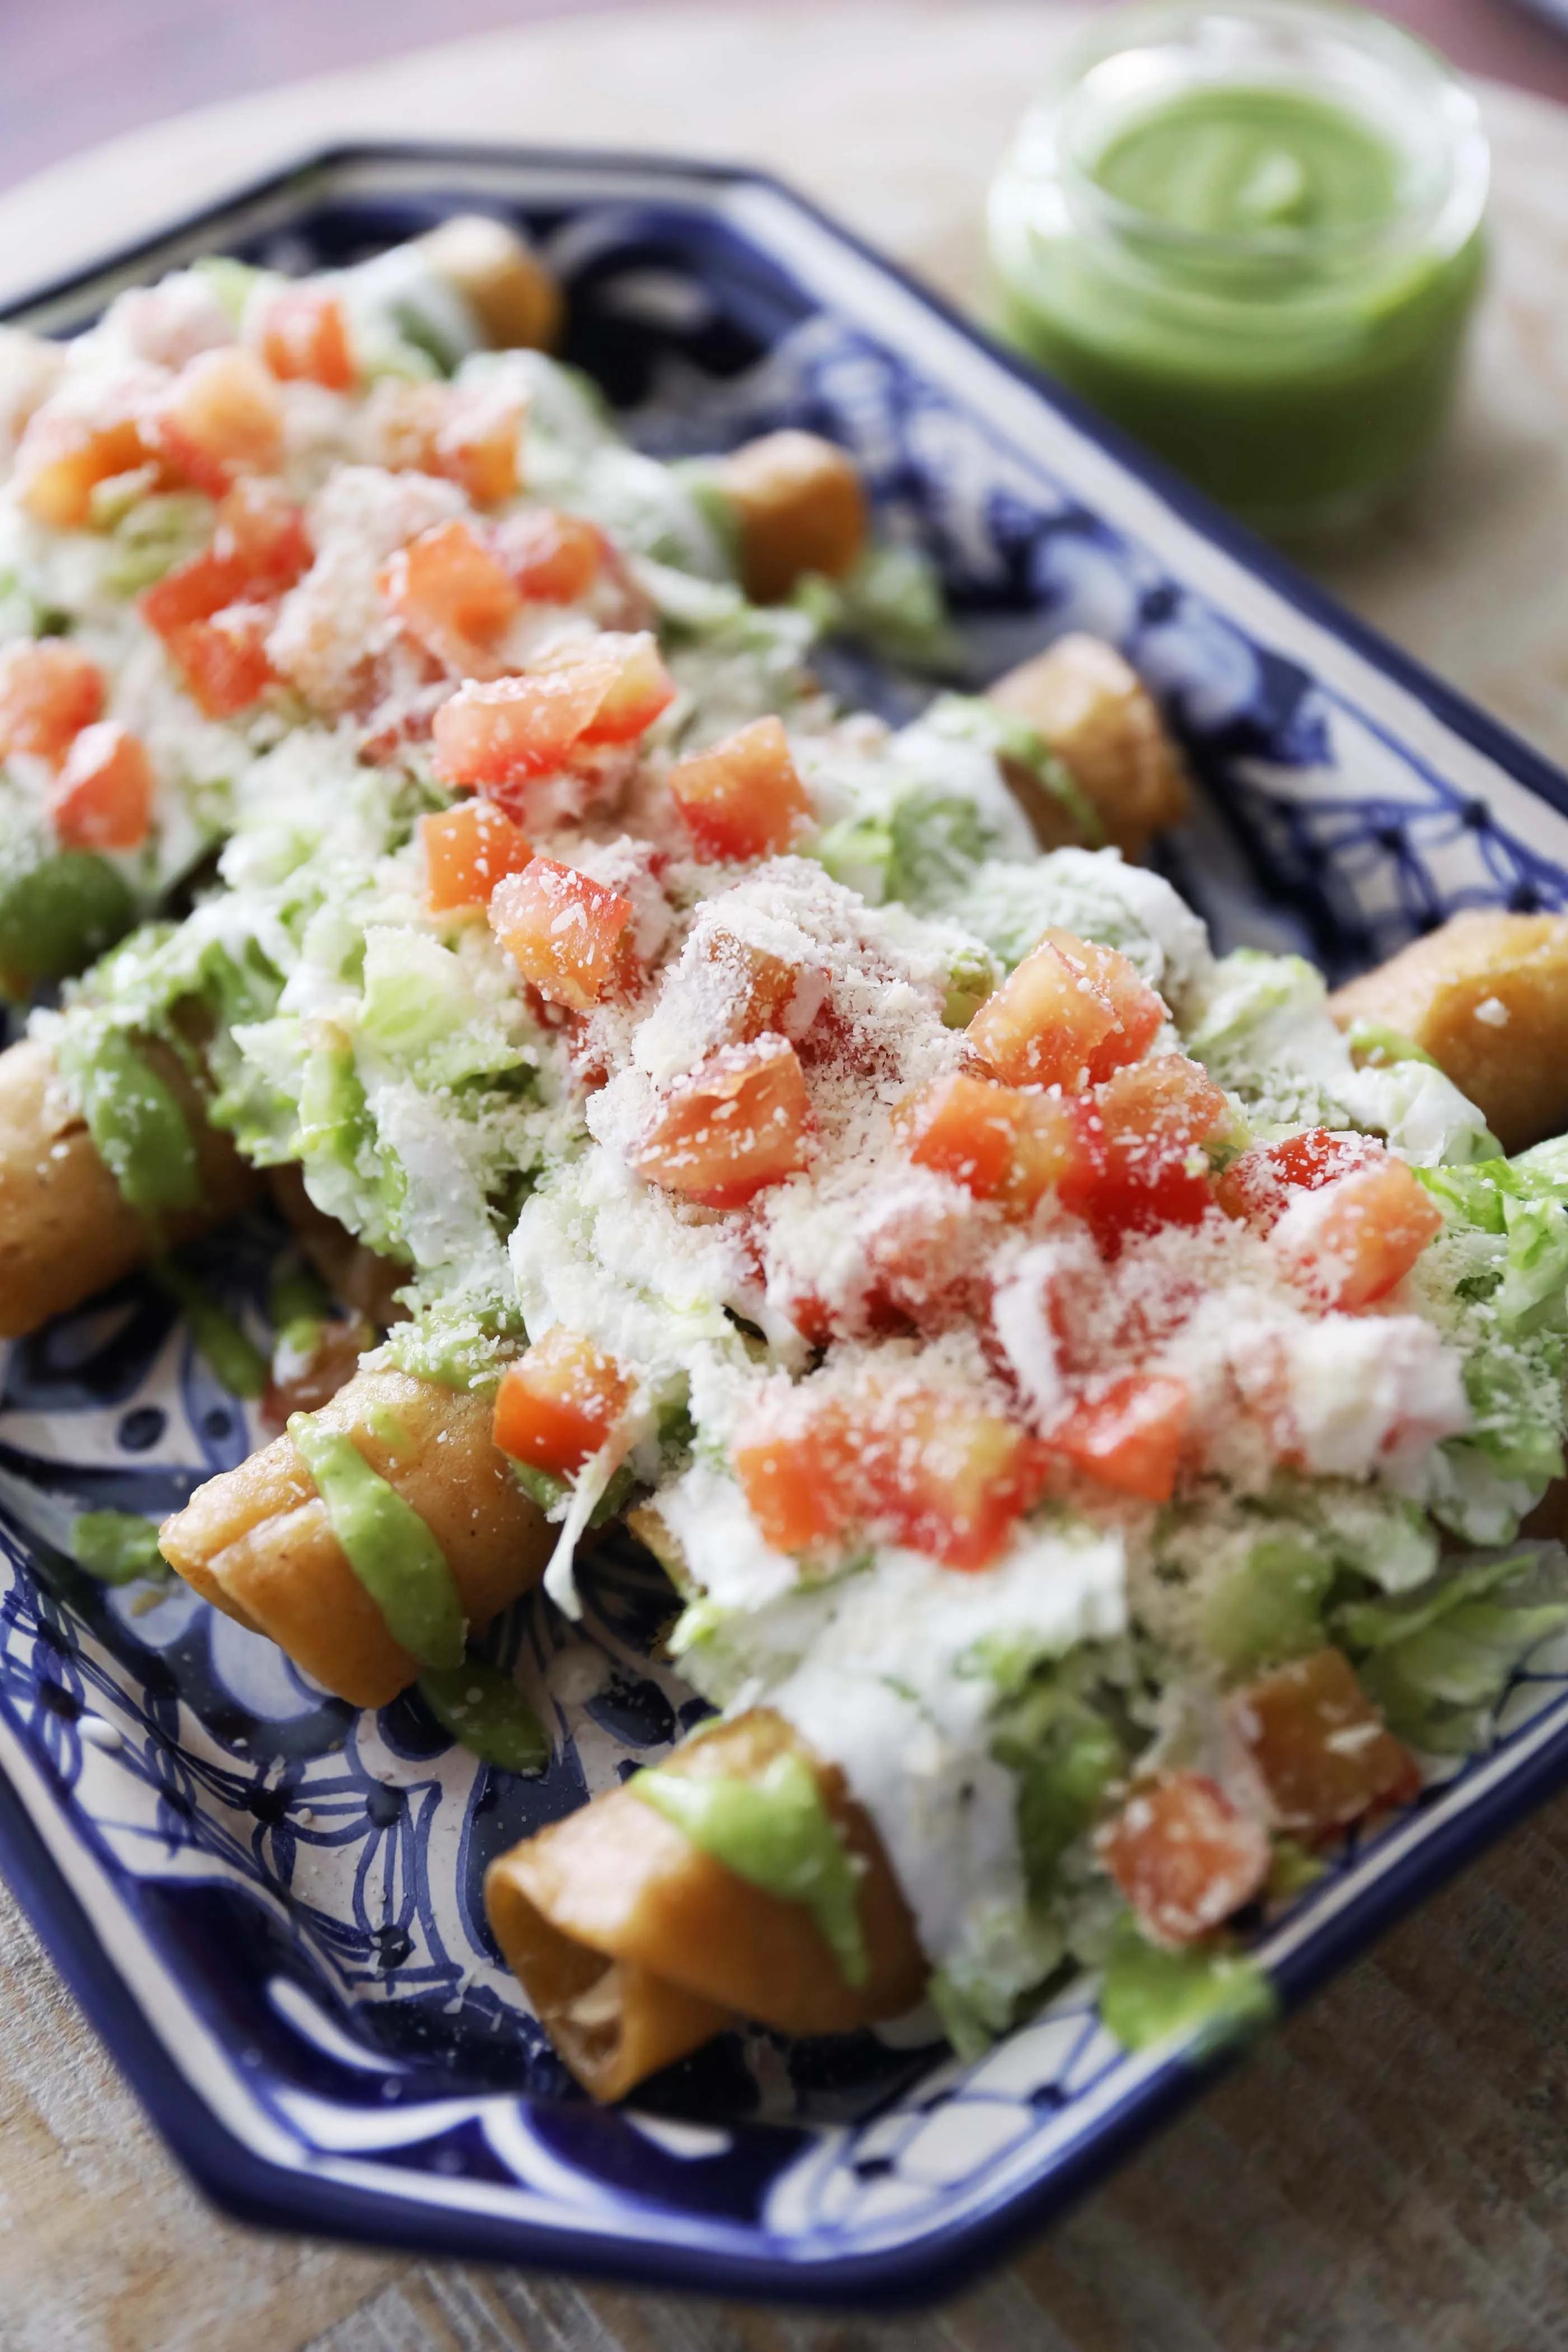 Flautas de Pollo | Mexican food recipes, Food network recipes, Mexican ...